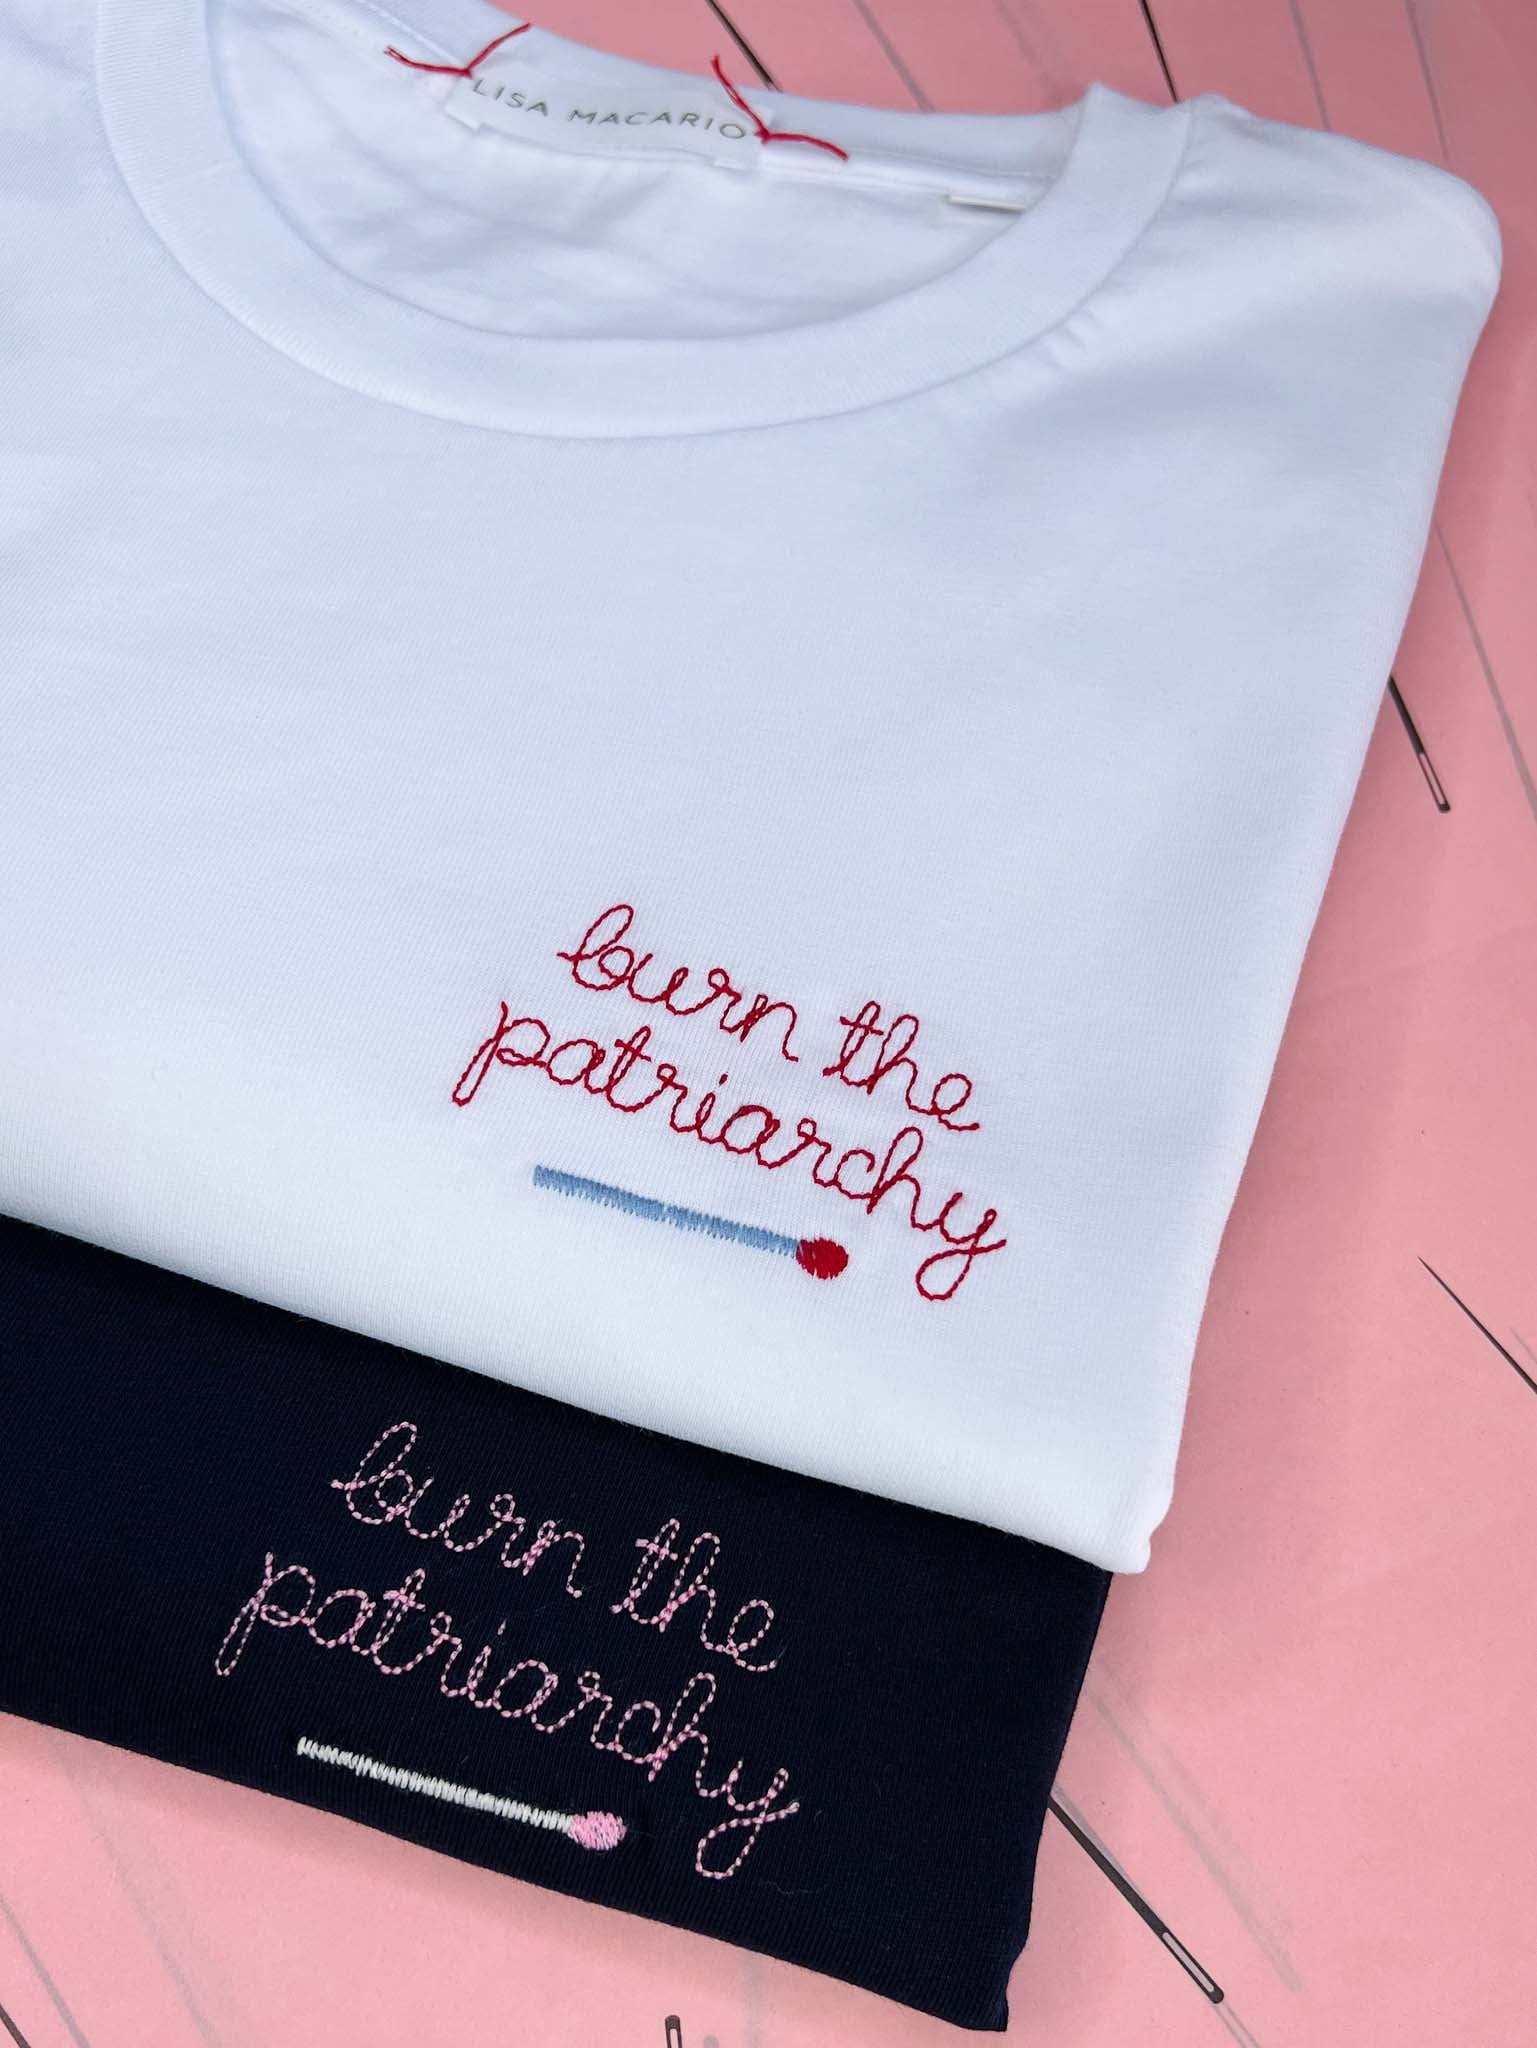 Burn Your Bra Short-Sleeve Unisex Feminist T-Shirt - Shop Women's